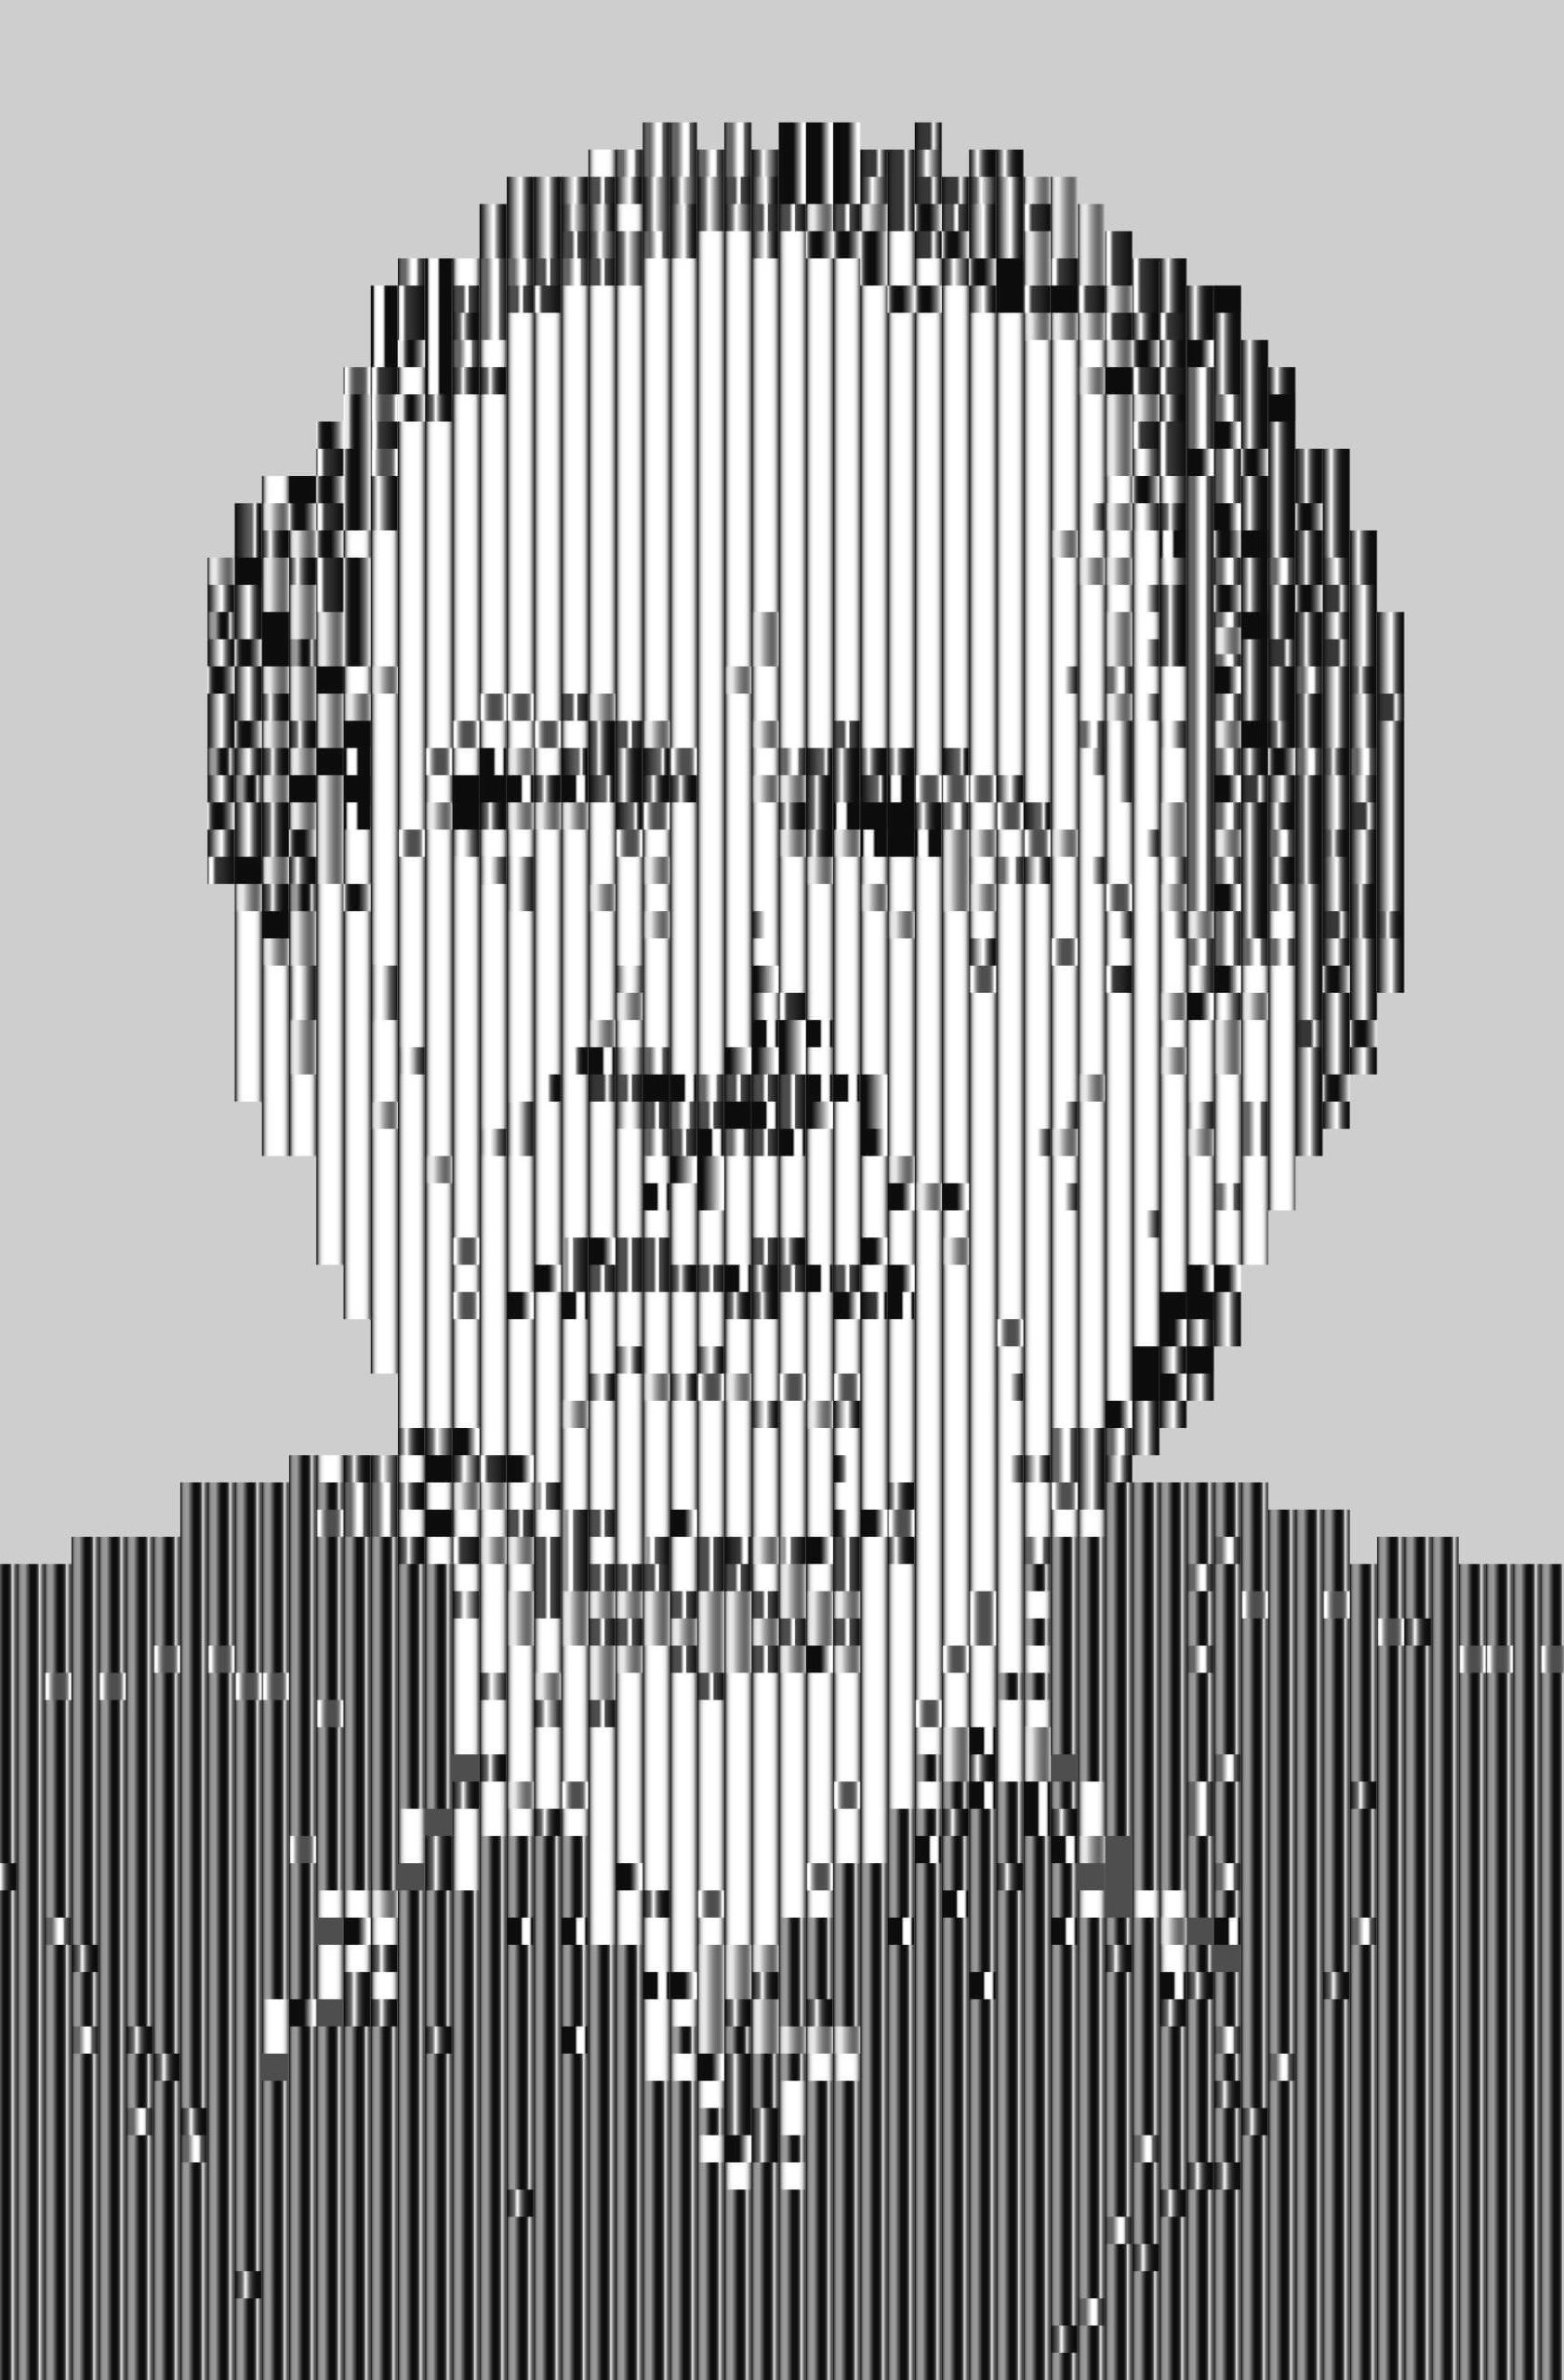 A rasterized portrait of Don DeLillo.